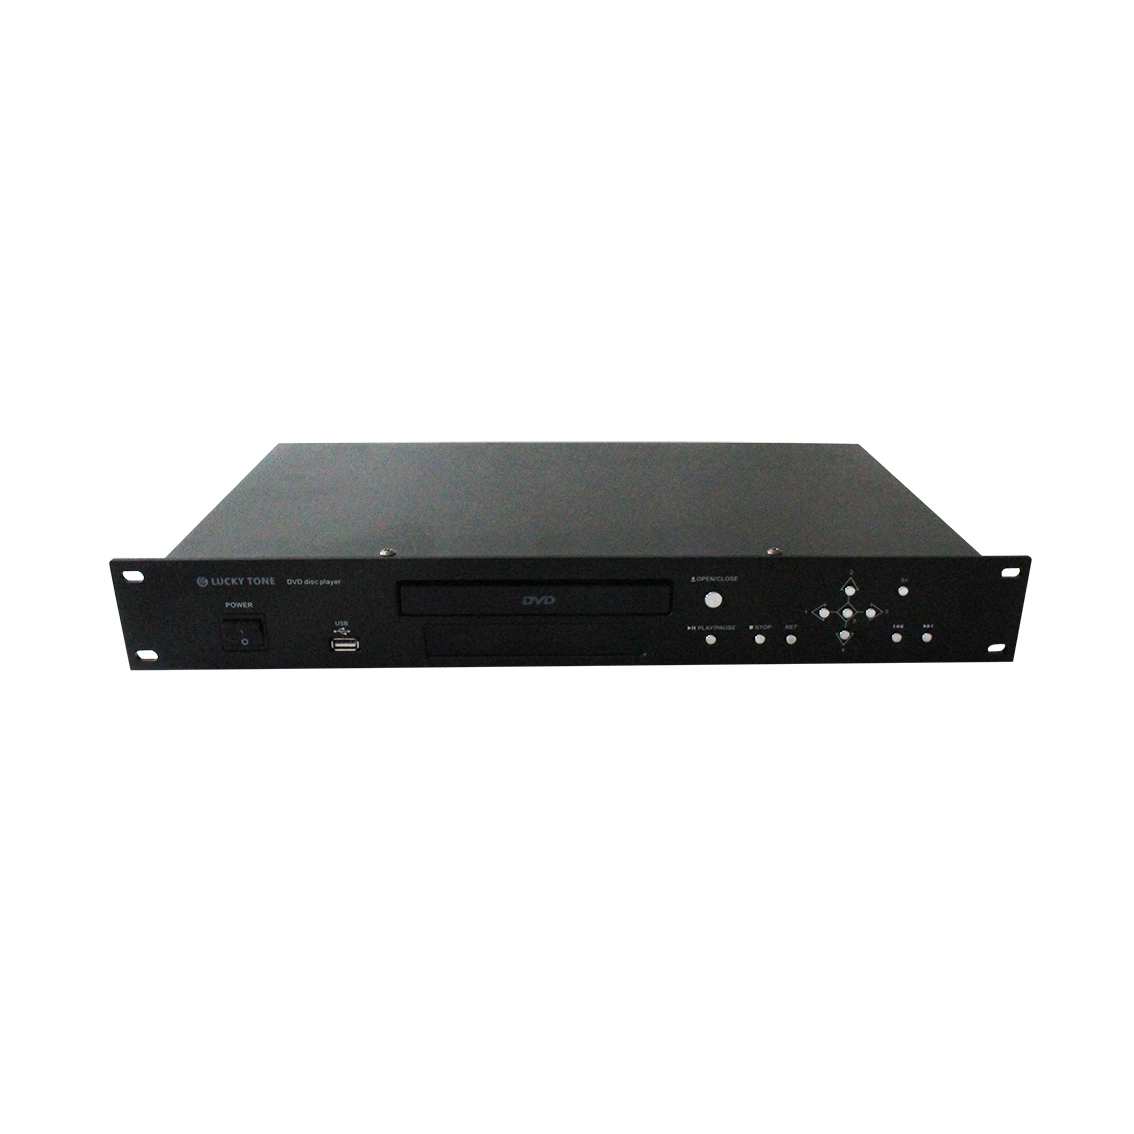 DVD-Audio-Player mit USB-Anschluss Sopport DVD, VCD, CD, HDCD, DIVX, SVCD, MPEG4, NP3, WMA, CDR/RW-Format